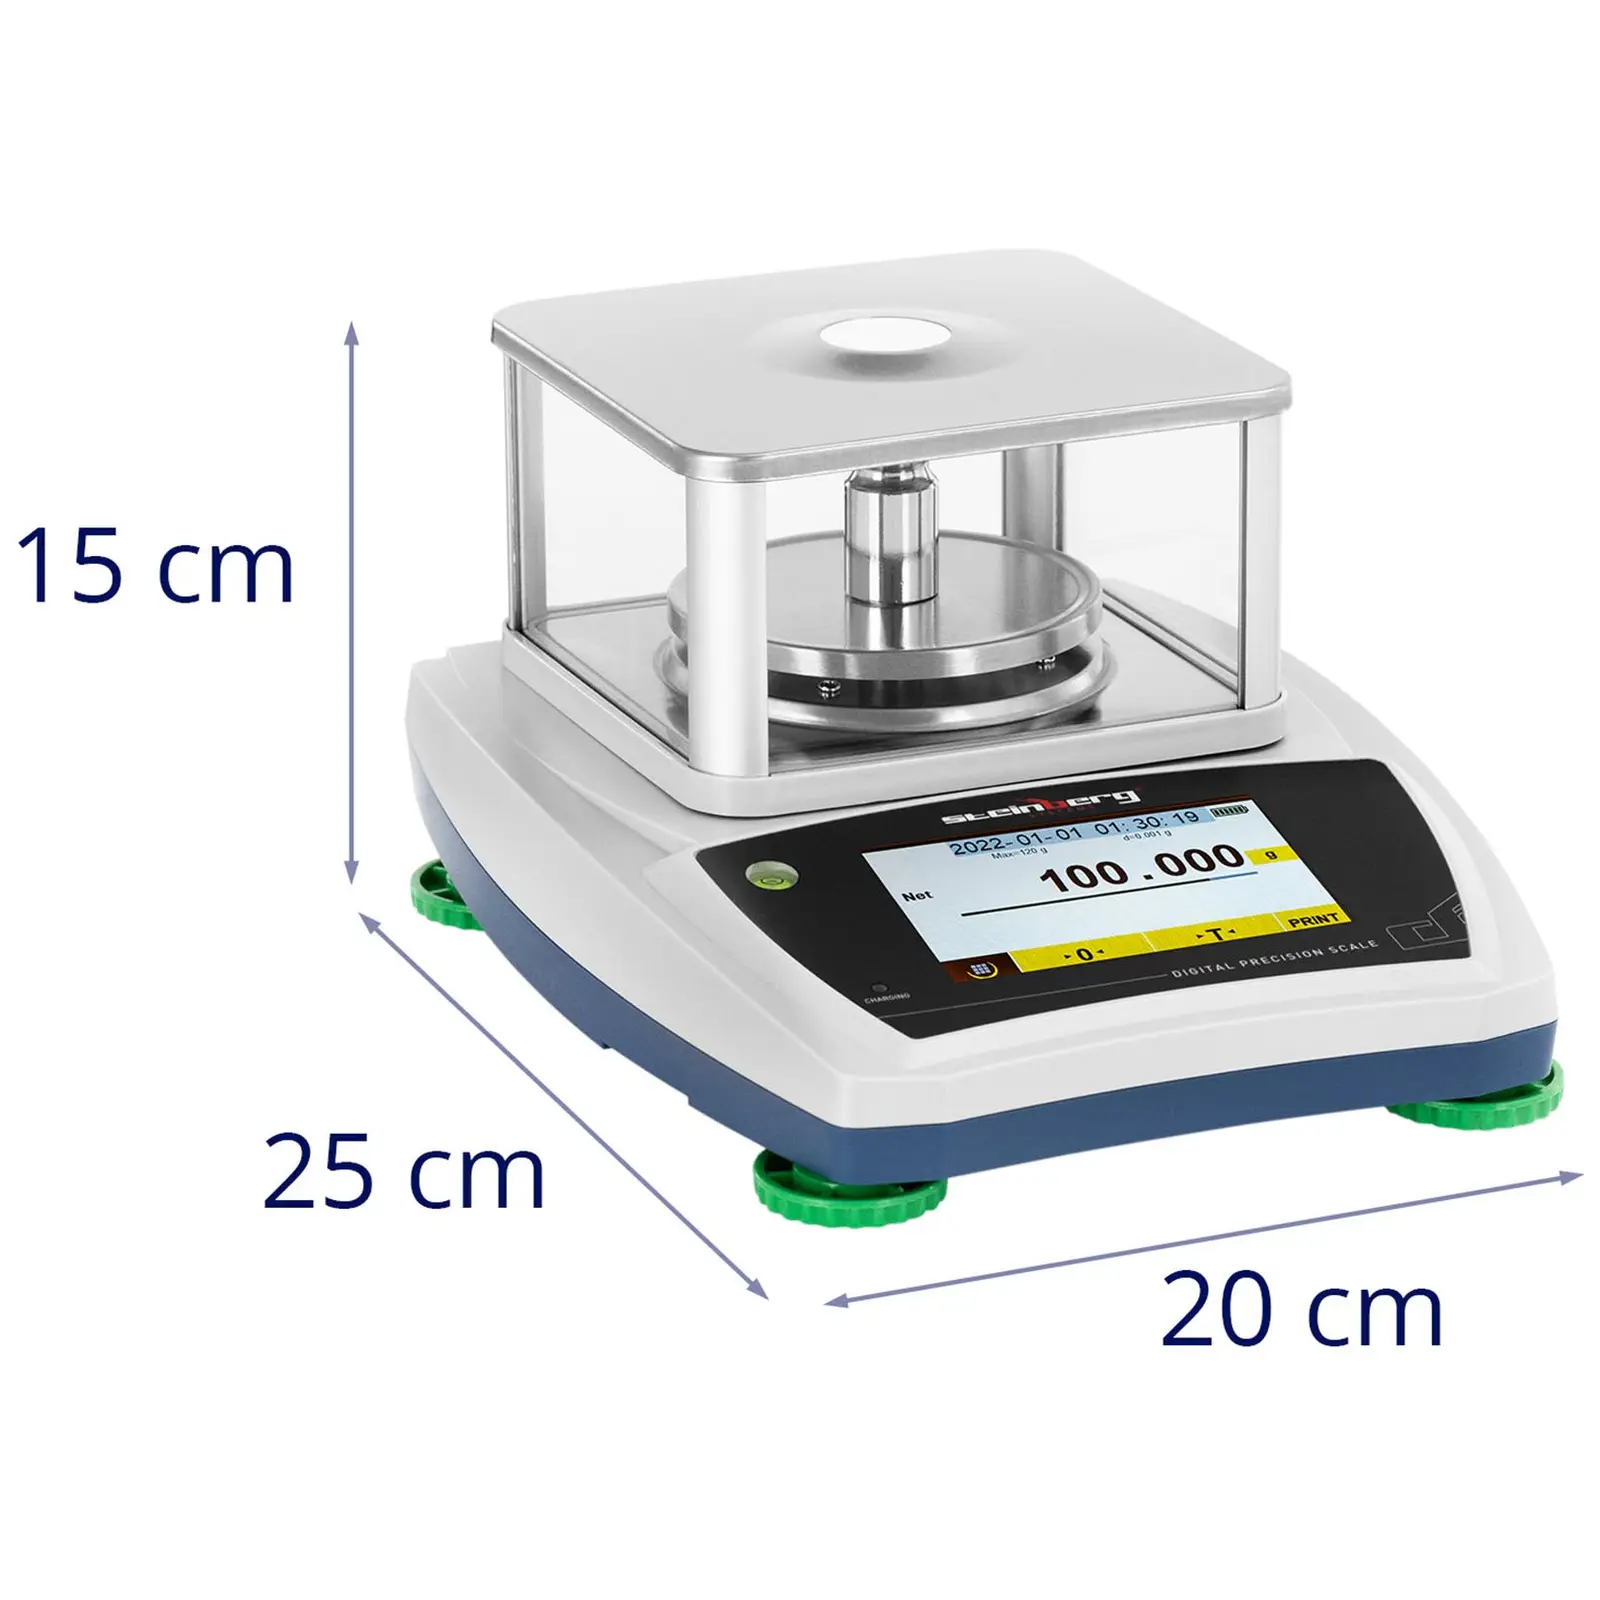 Waga laboratoryjna - 120 g / 0,001 g - Ø98 mm - dotykowy panel LCD - szklana osłona przeciwpodmuchowa